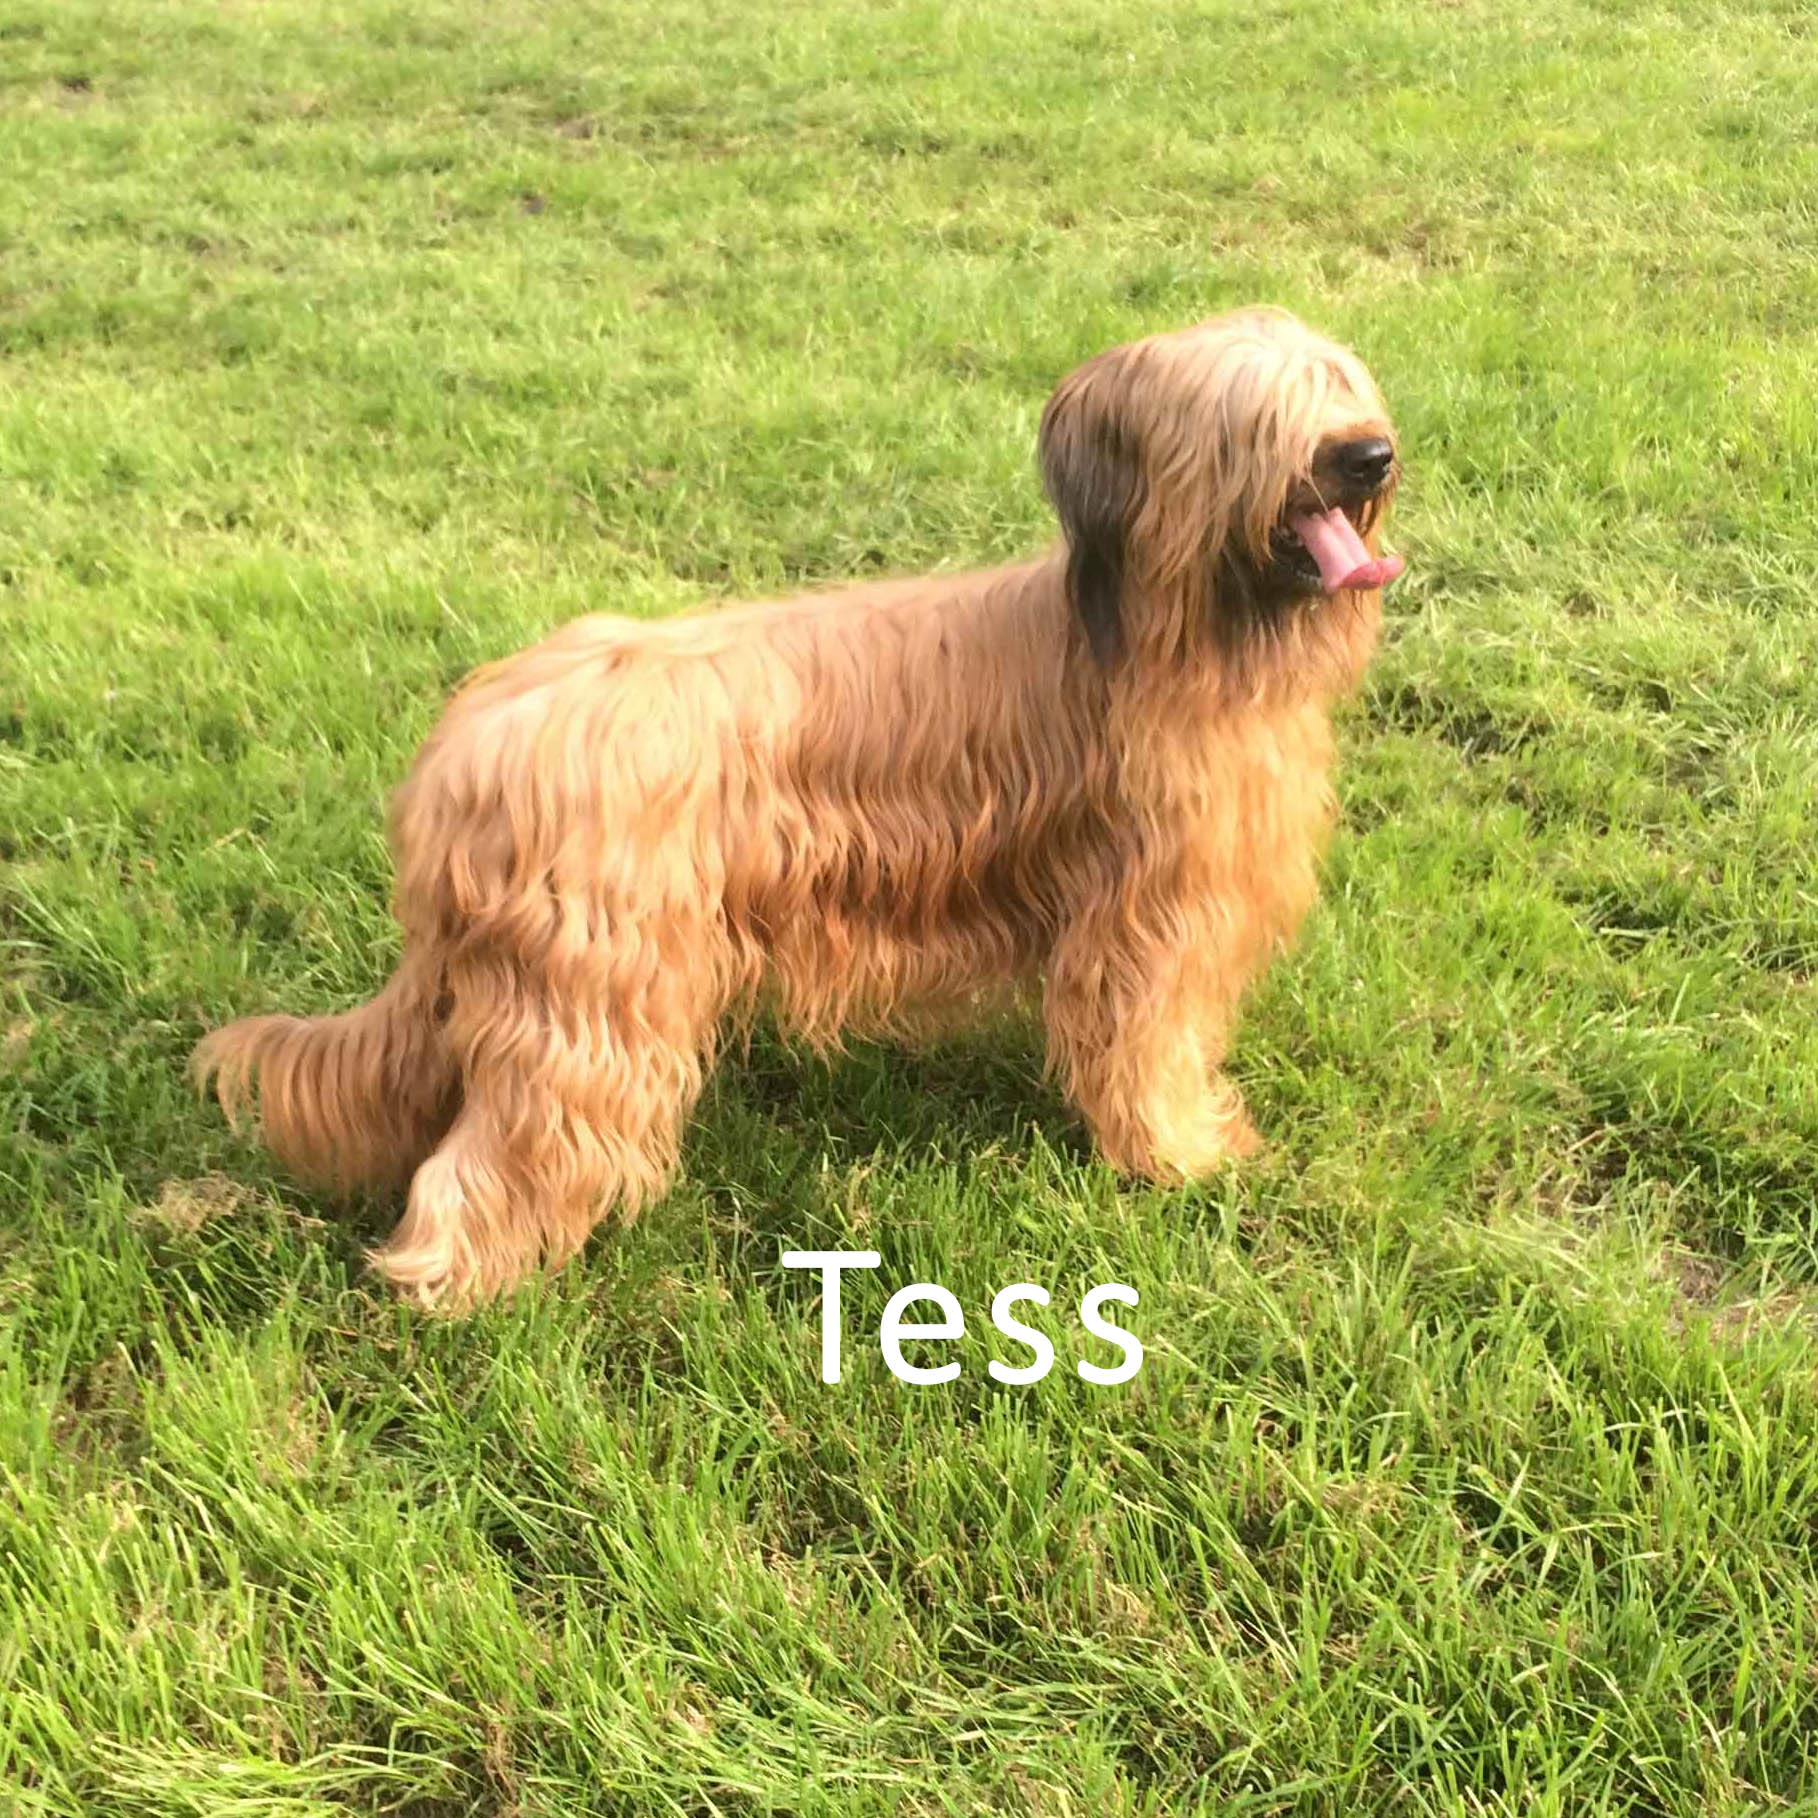 Klik om de stamboom van Tess te bekijken